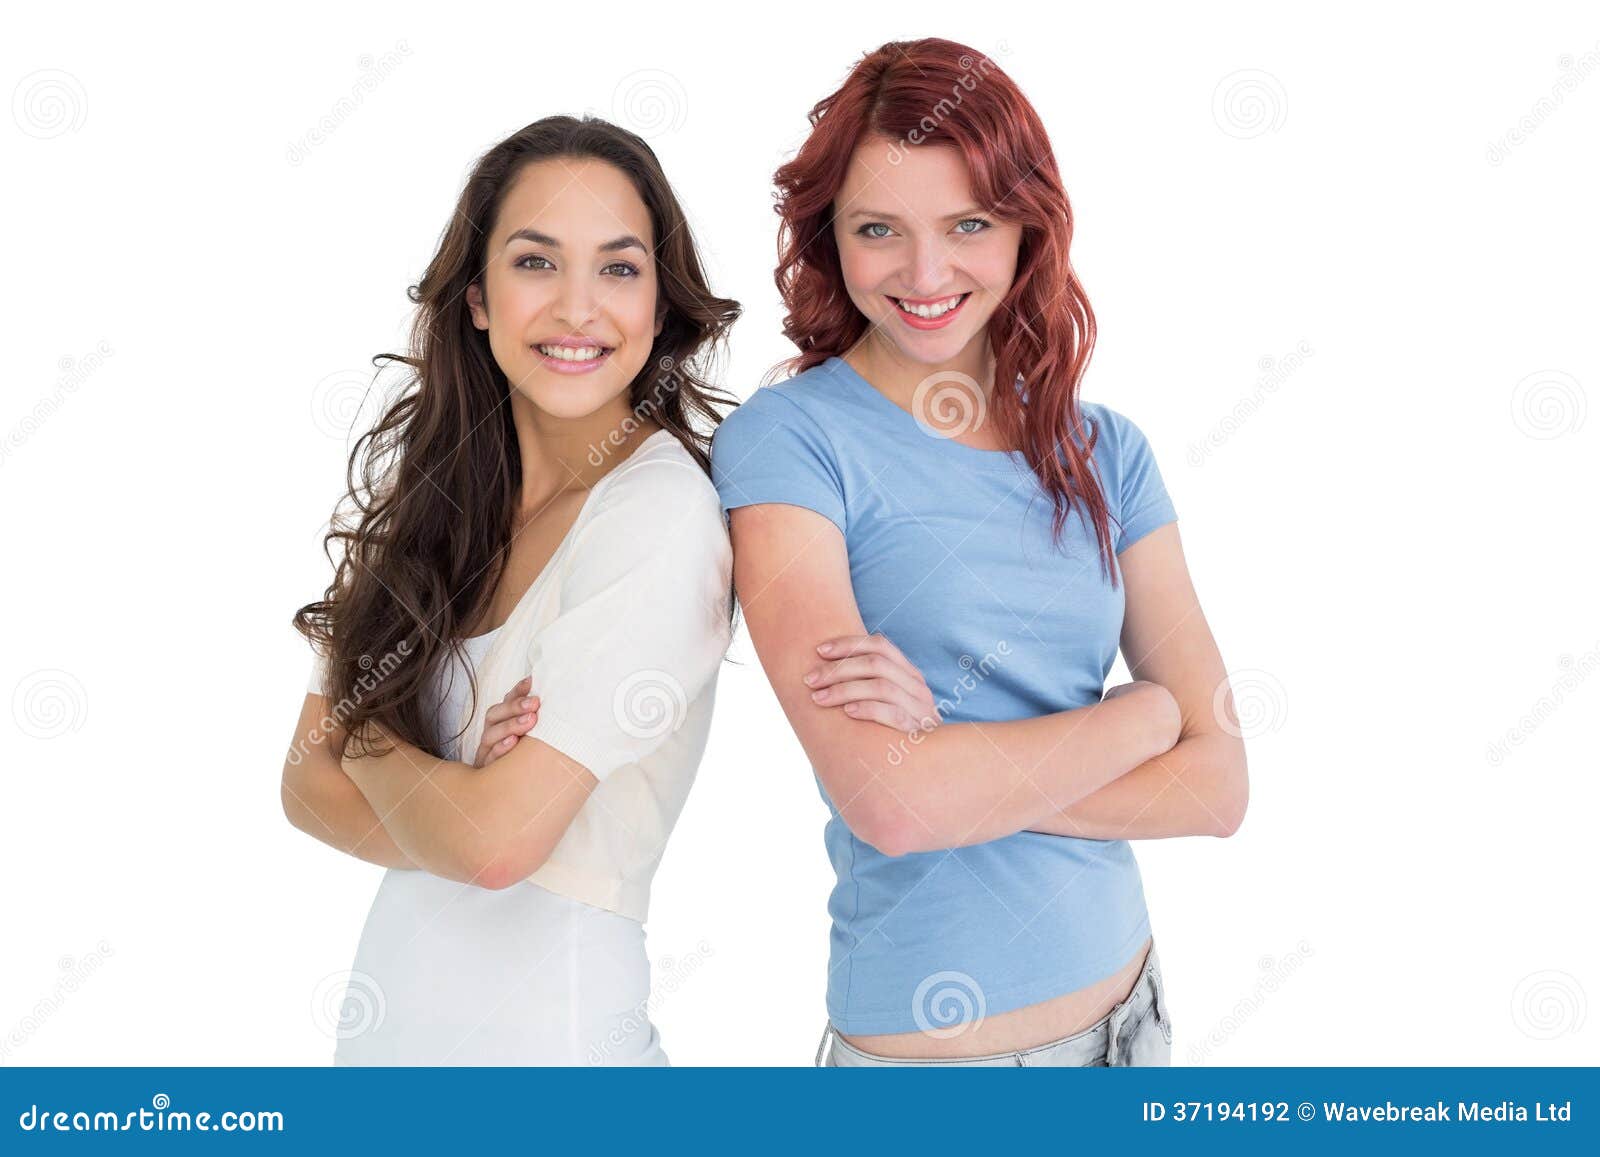 Привела подругу с разговорами. Две женщины стоят улыбаются. Женщины подруги на белом фоне. Две девушки скрестив руки. Подружки стоят рядом.